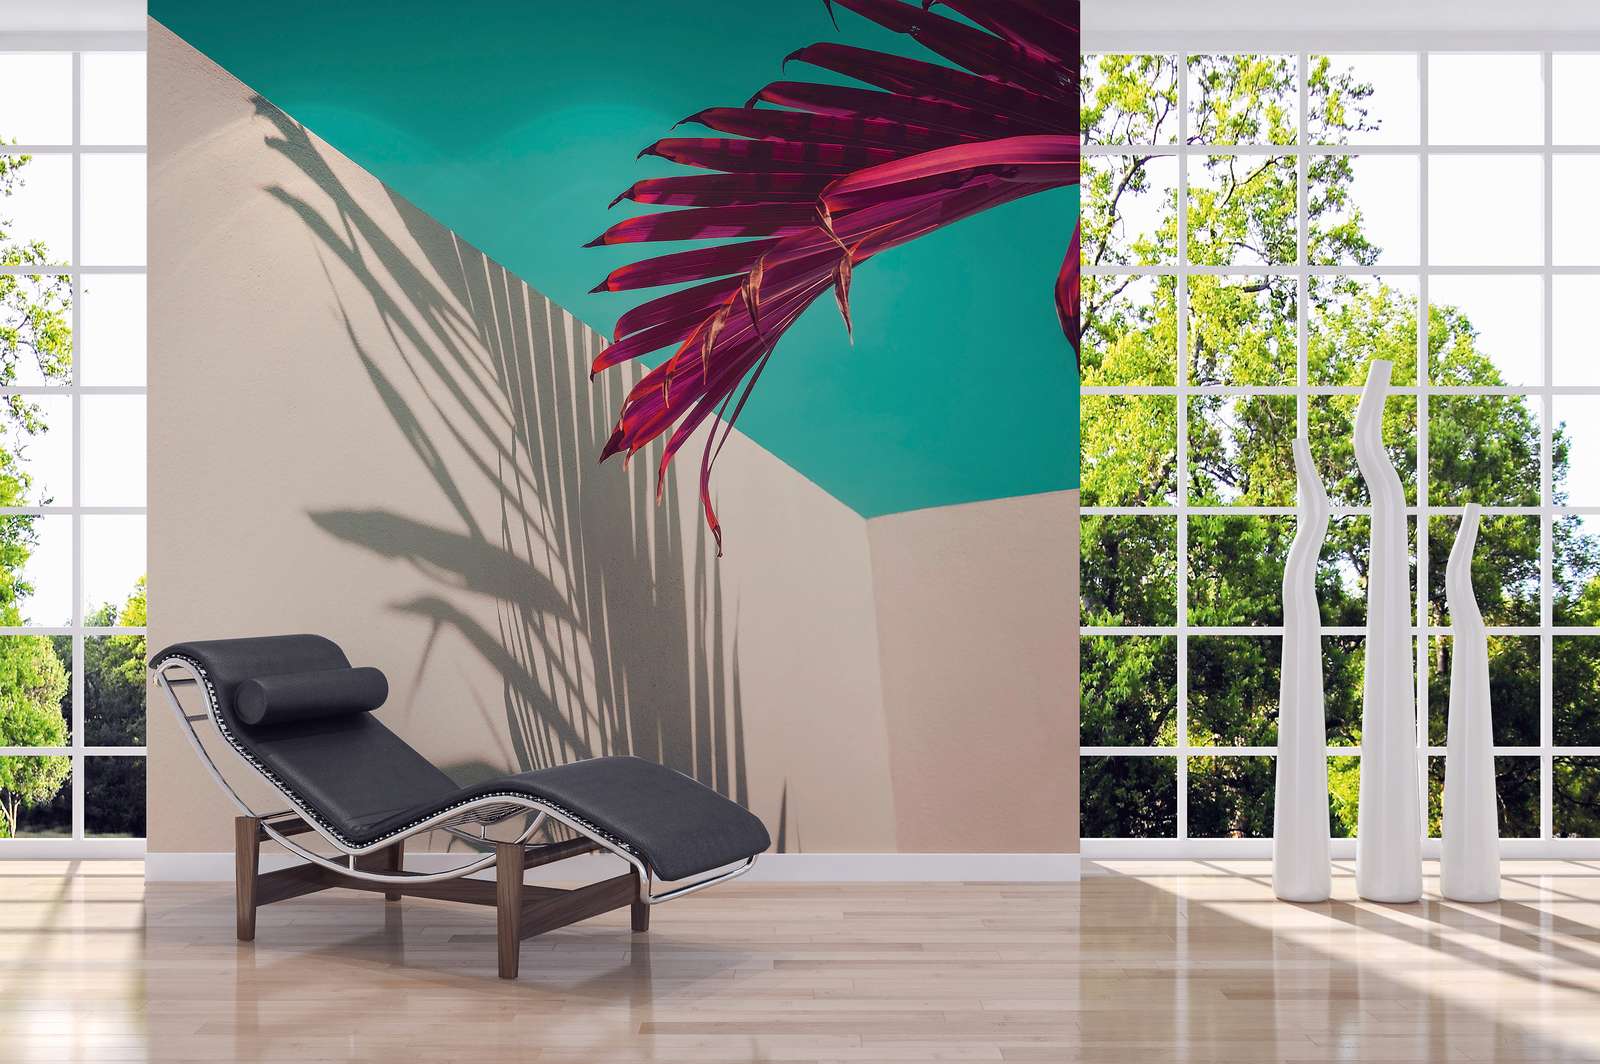             Digital behang met palmblad en schaduw op betonnen muur - paars, turkoois, wit
        